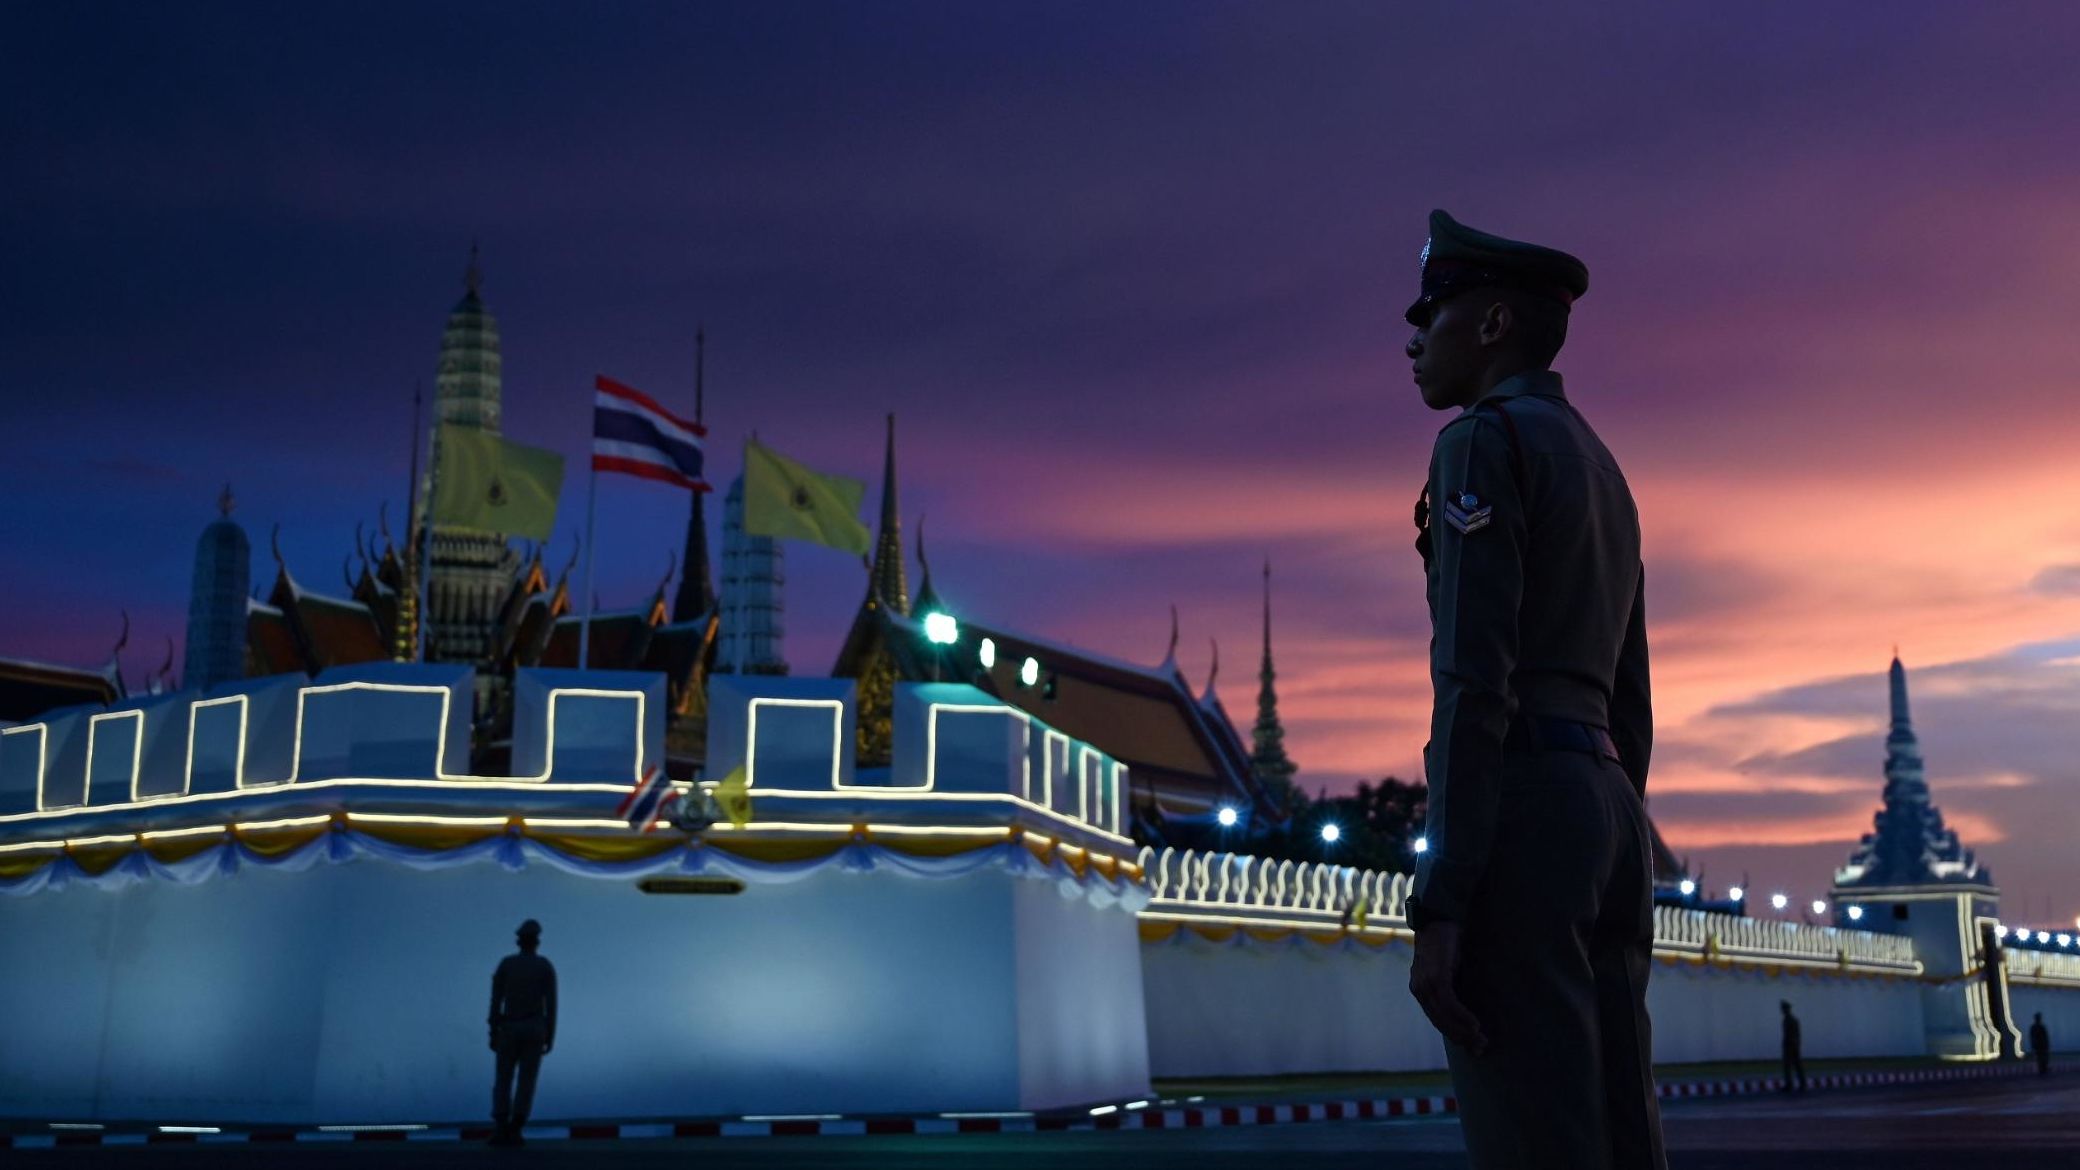 Royal Thai police stand guard near the Grand Palace in Bangkok on Friday, May 3, ahead of King Maha Vajiralongkorn's coronation.